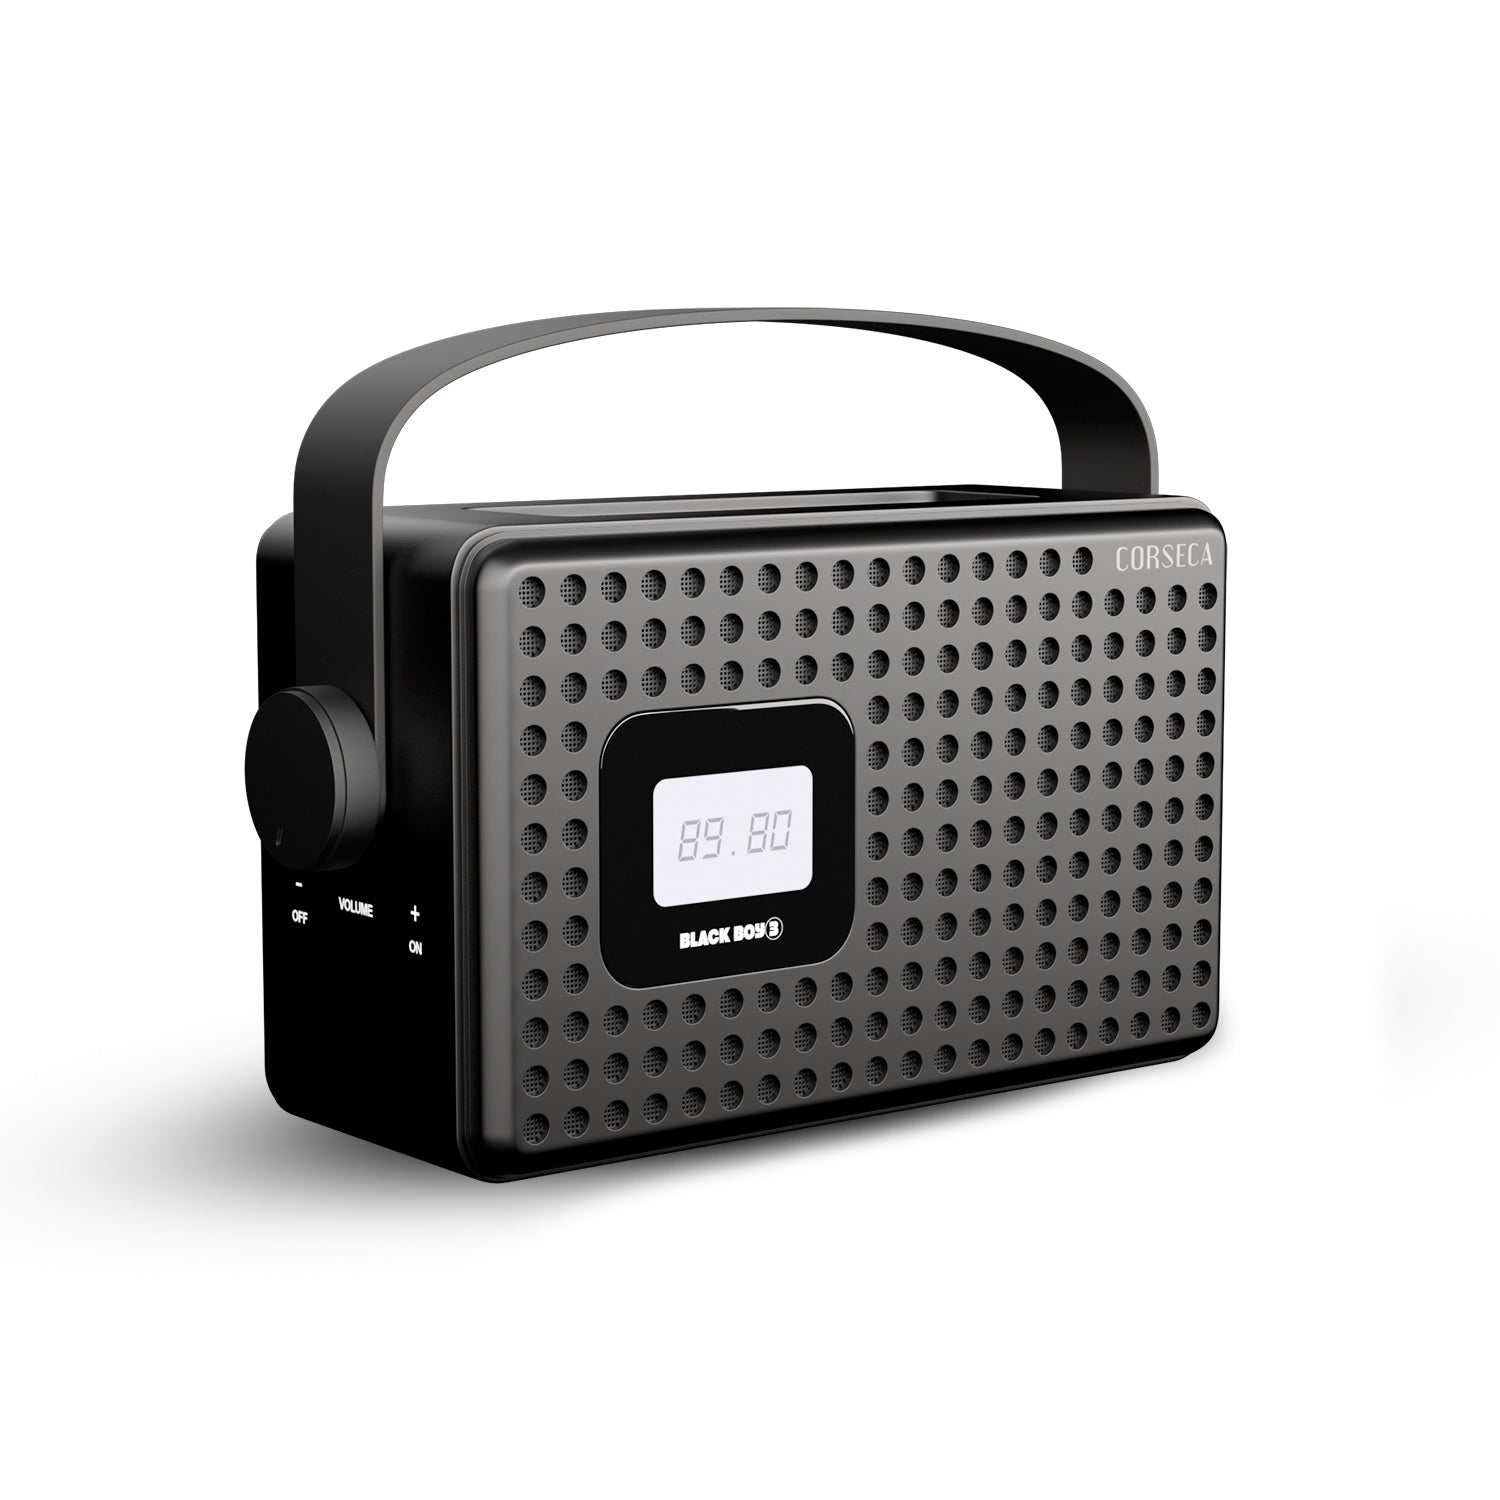 Buy Blackboy3 Speaker - CORSECA